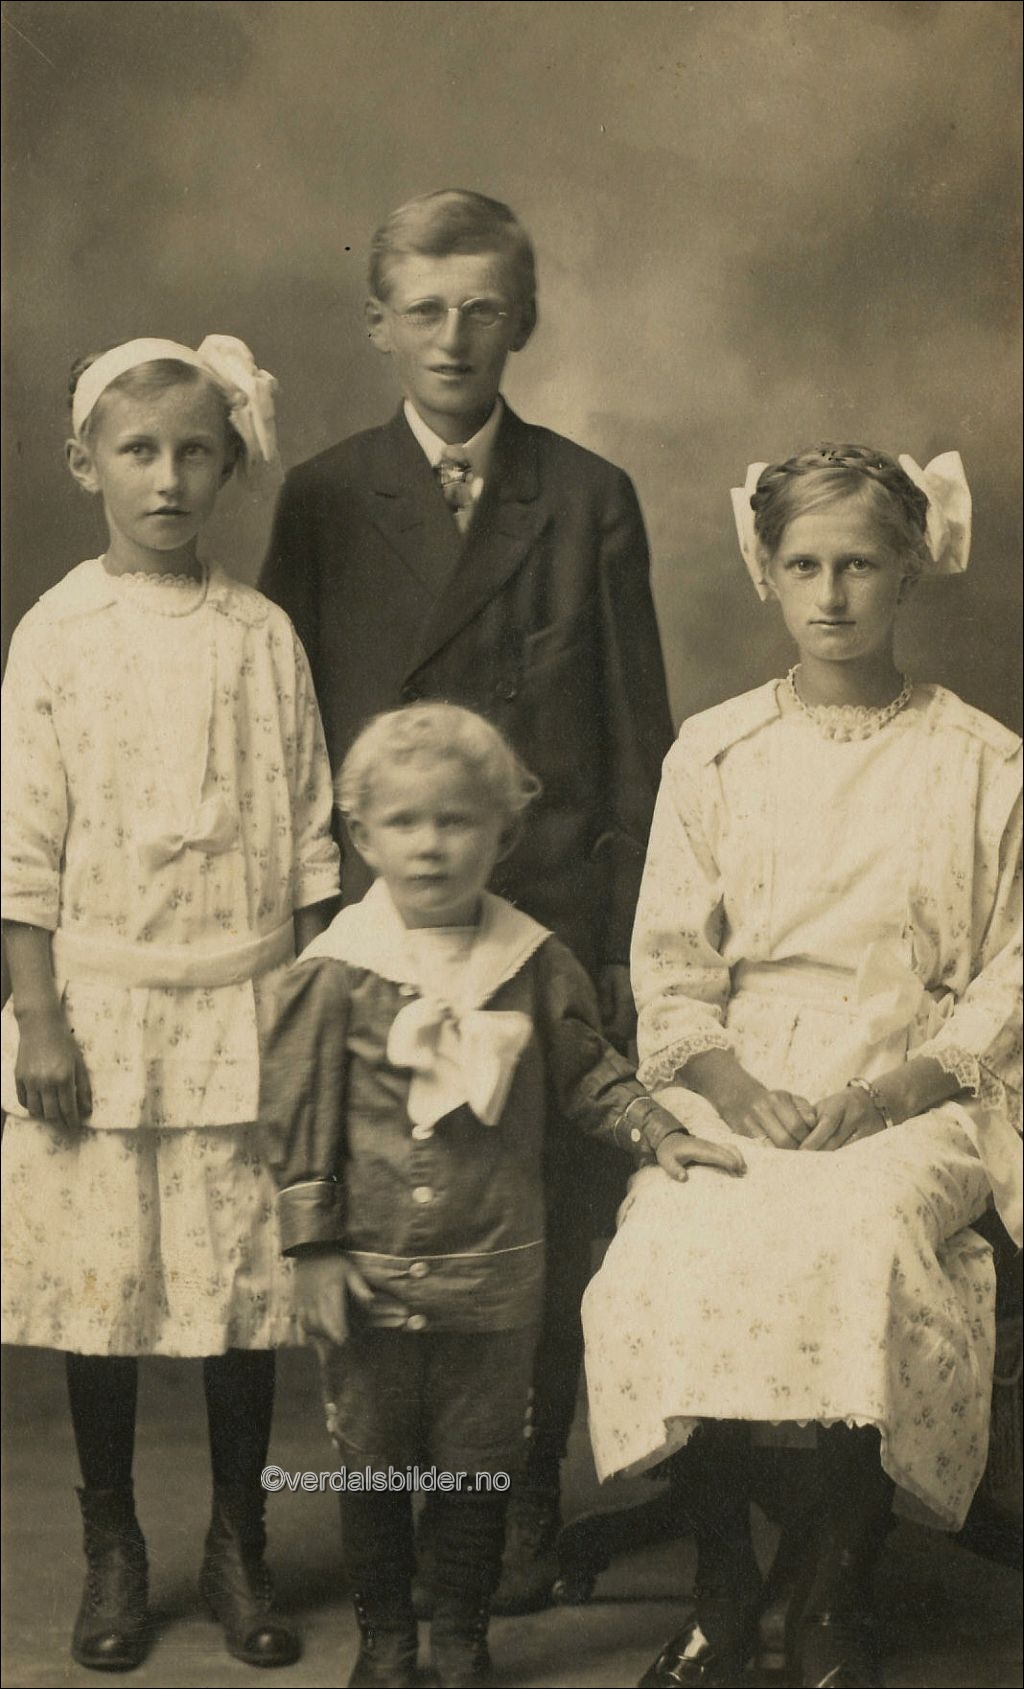 Alle er barn til Jeremias Olsen Skavhaug og kona Marte Mikkelsdatter Haga som utvandret til Amerika i 1903 og bodde i Minnesota. Utlånt av Arve Kålen. Navnsatt av magne Årstadvold.